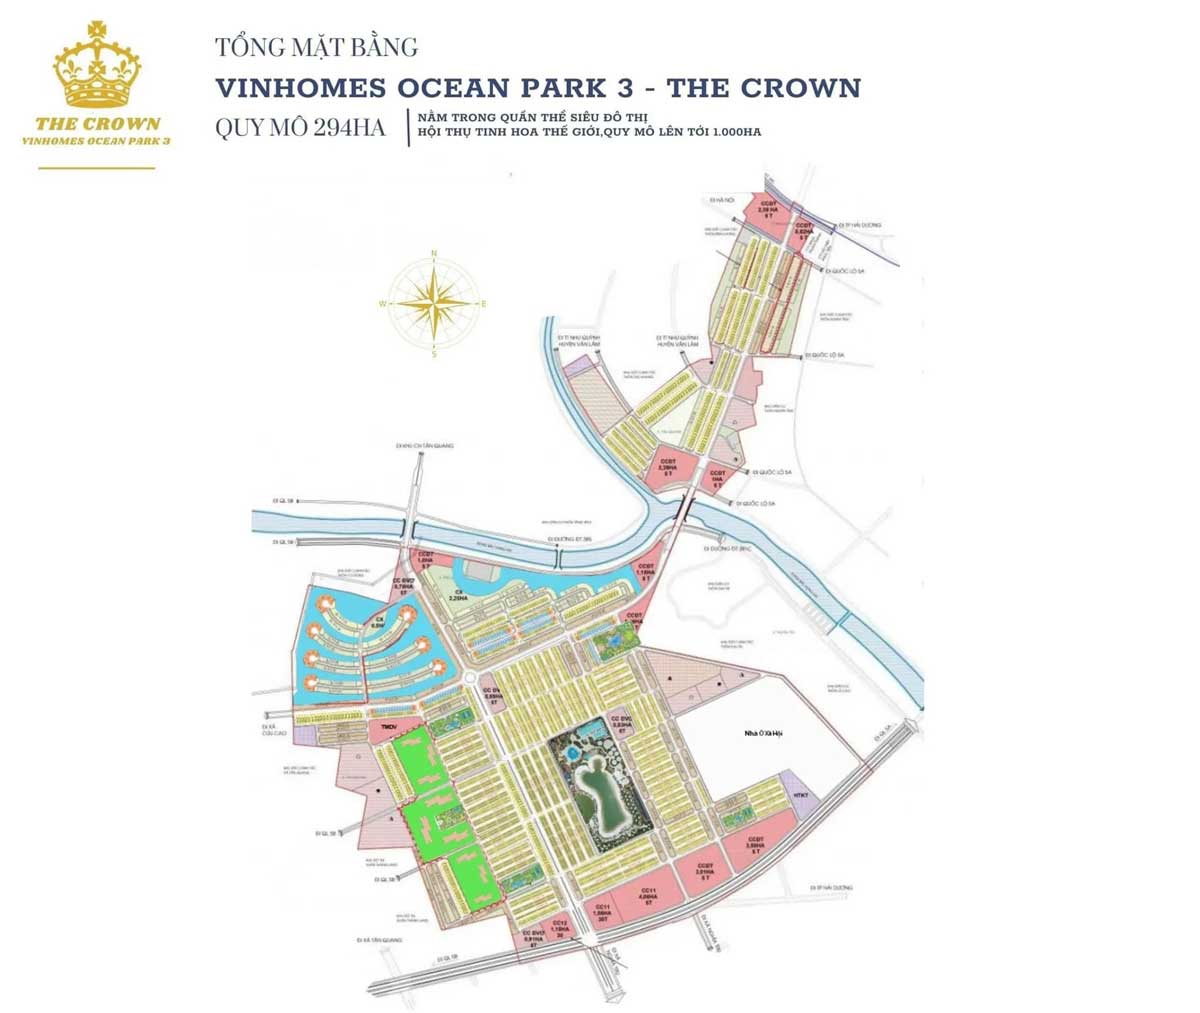 mat bang du an vinhomes ocean park 3 the crown - Vinhomes Ocean Park 3 The Crown